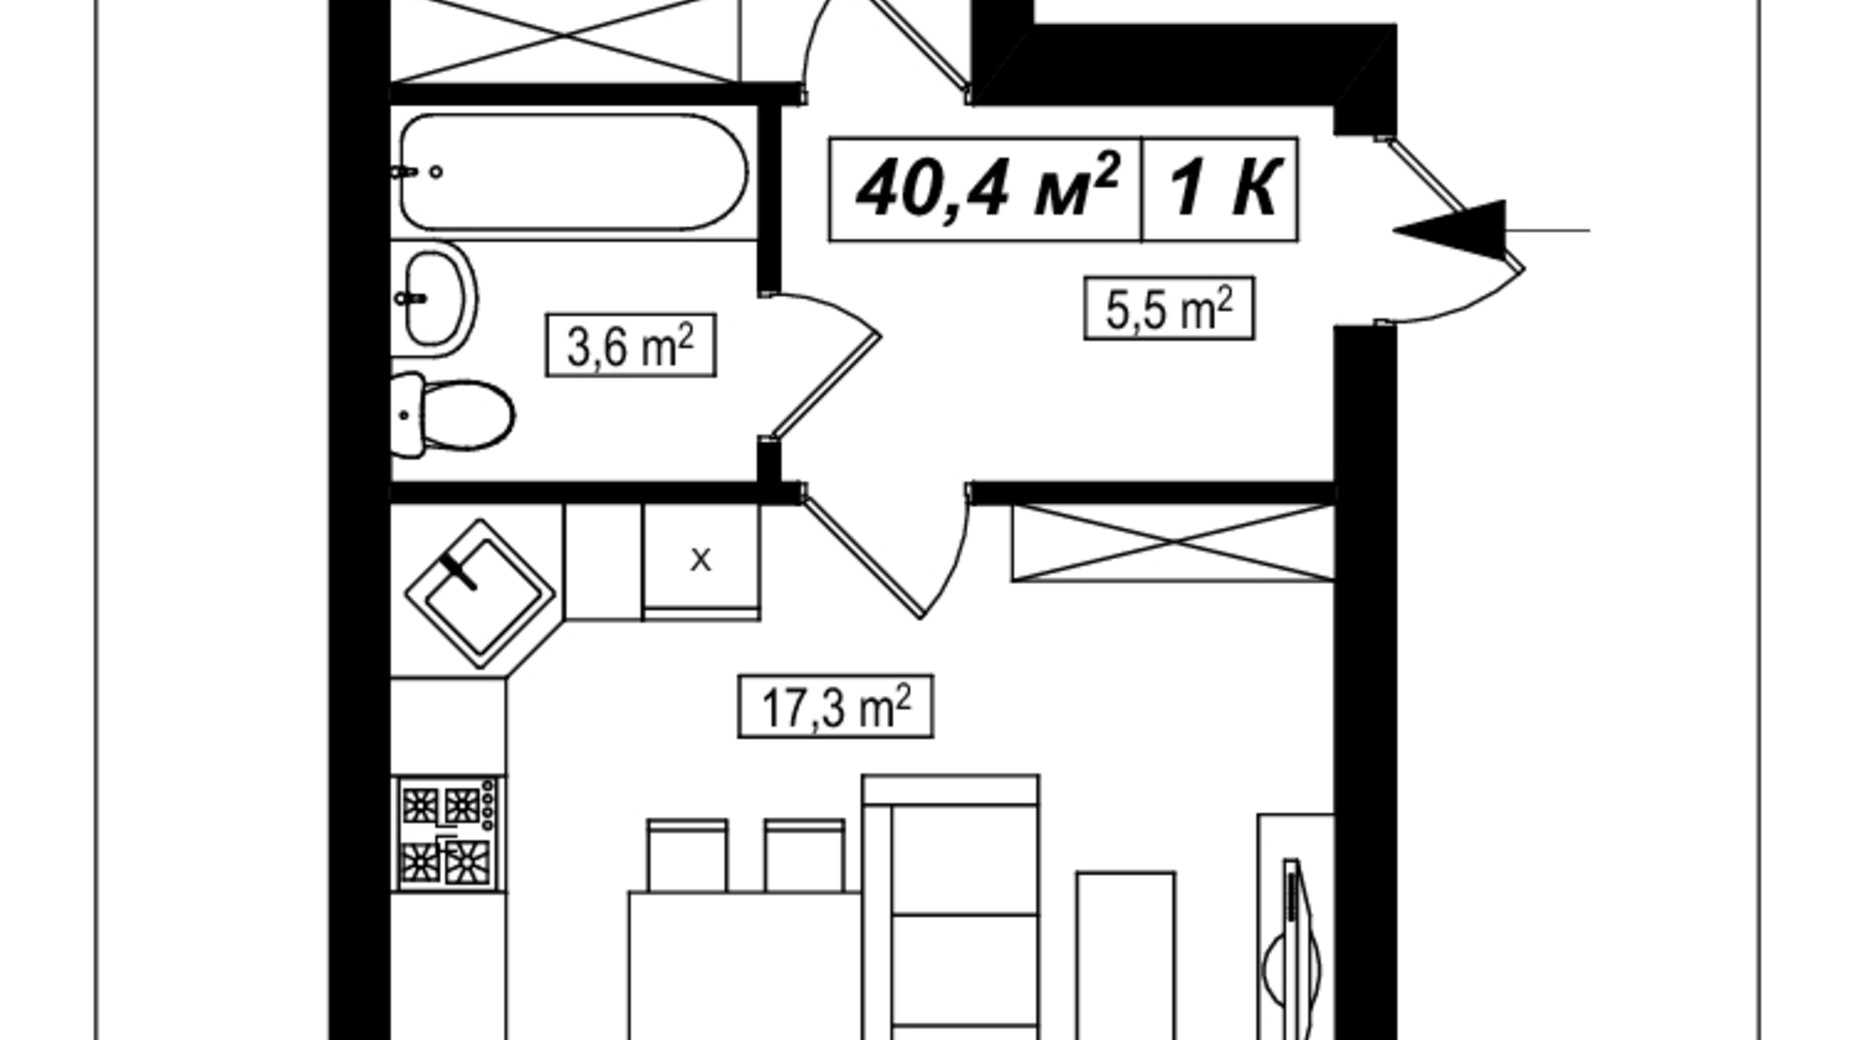 Планировка 1-комнатной квартиры в ЖК Амстердам 40.4 м², фото 565285